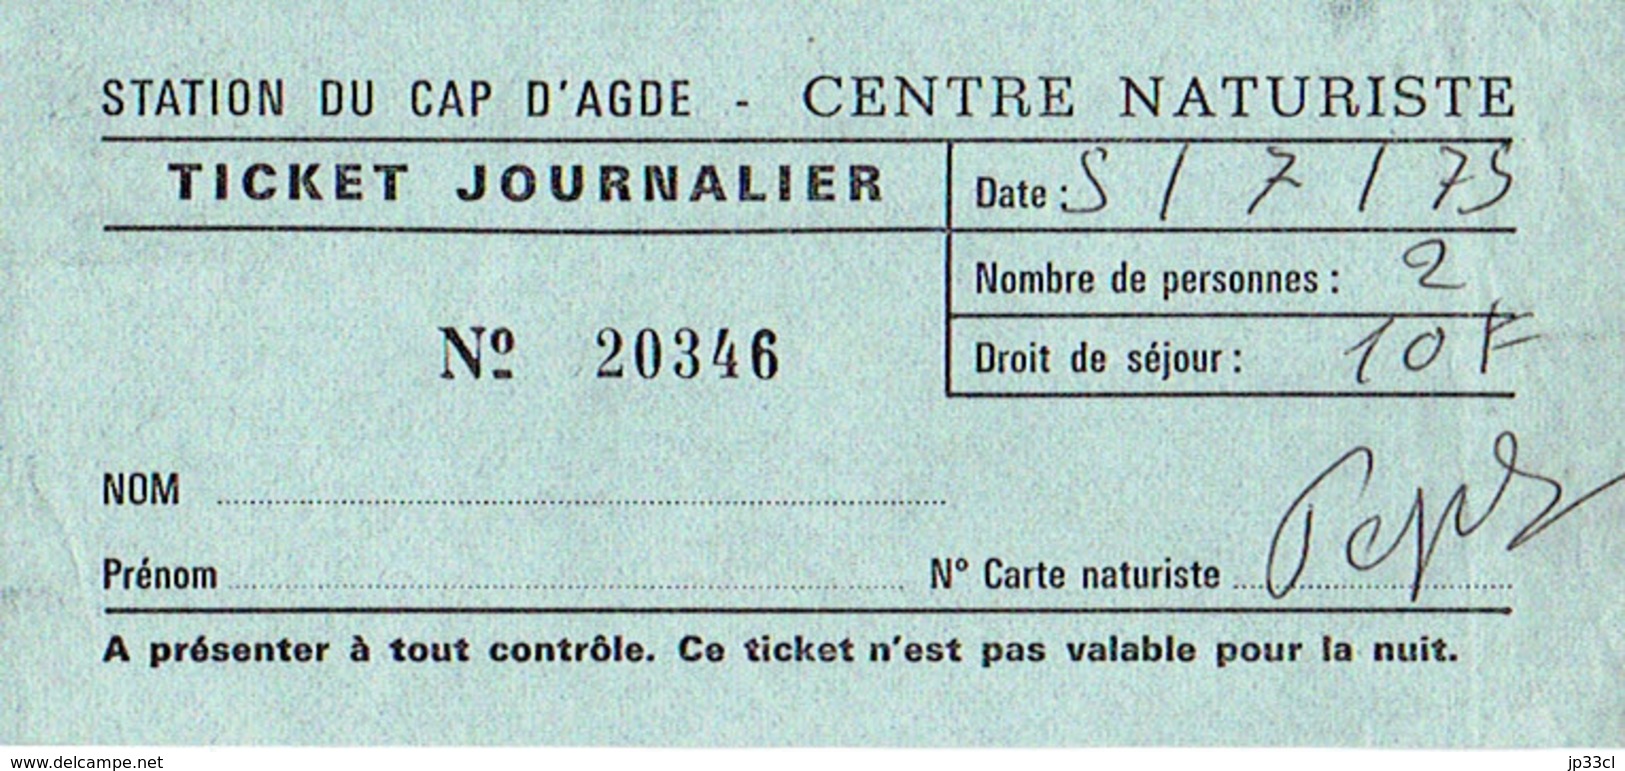 Ancien Ticket Journalier D'entrée Au Centre Naturiste Du Cap D'Agde (5/7/1975) - Tickets D'entrée